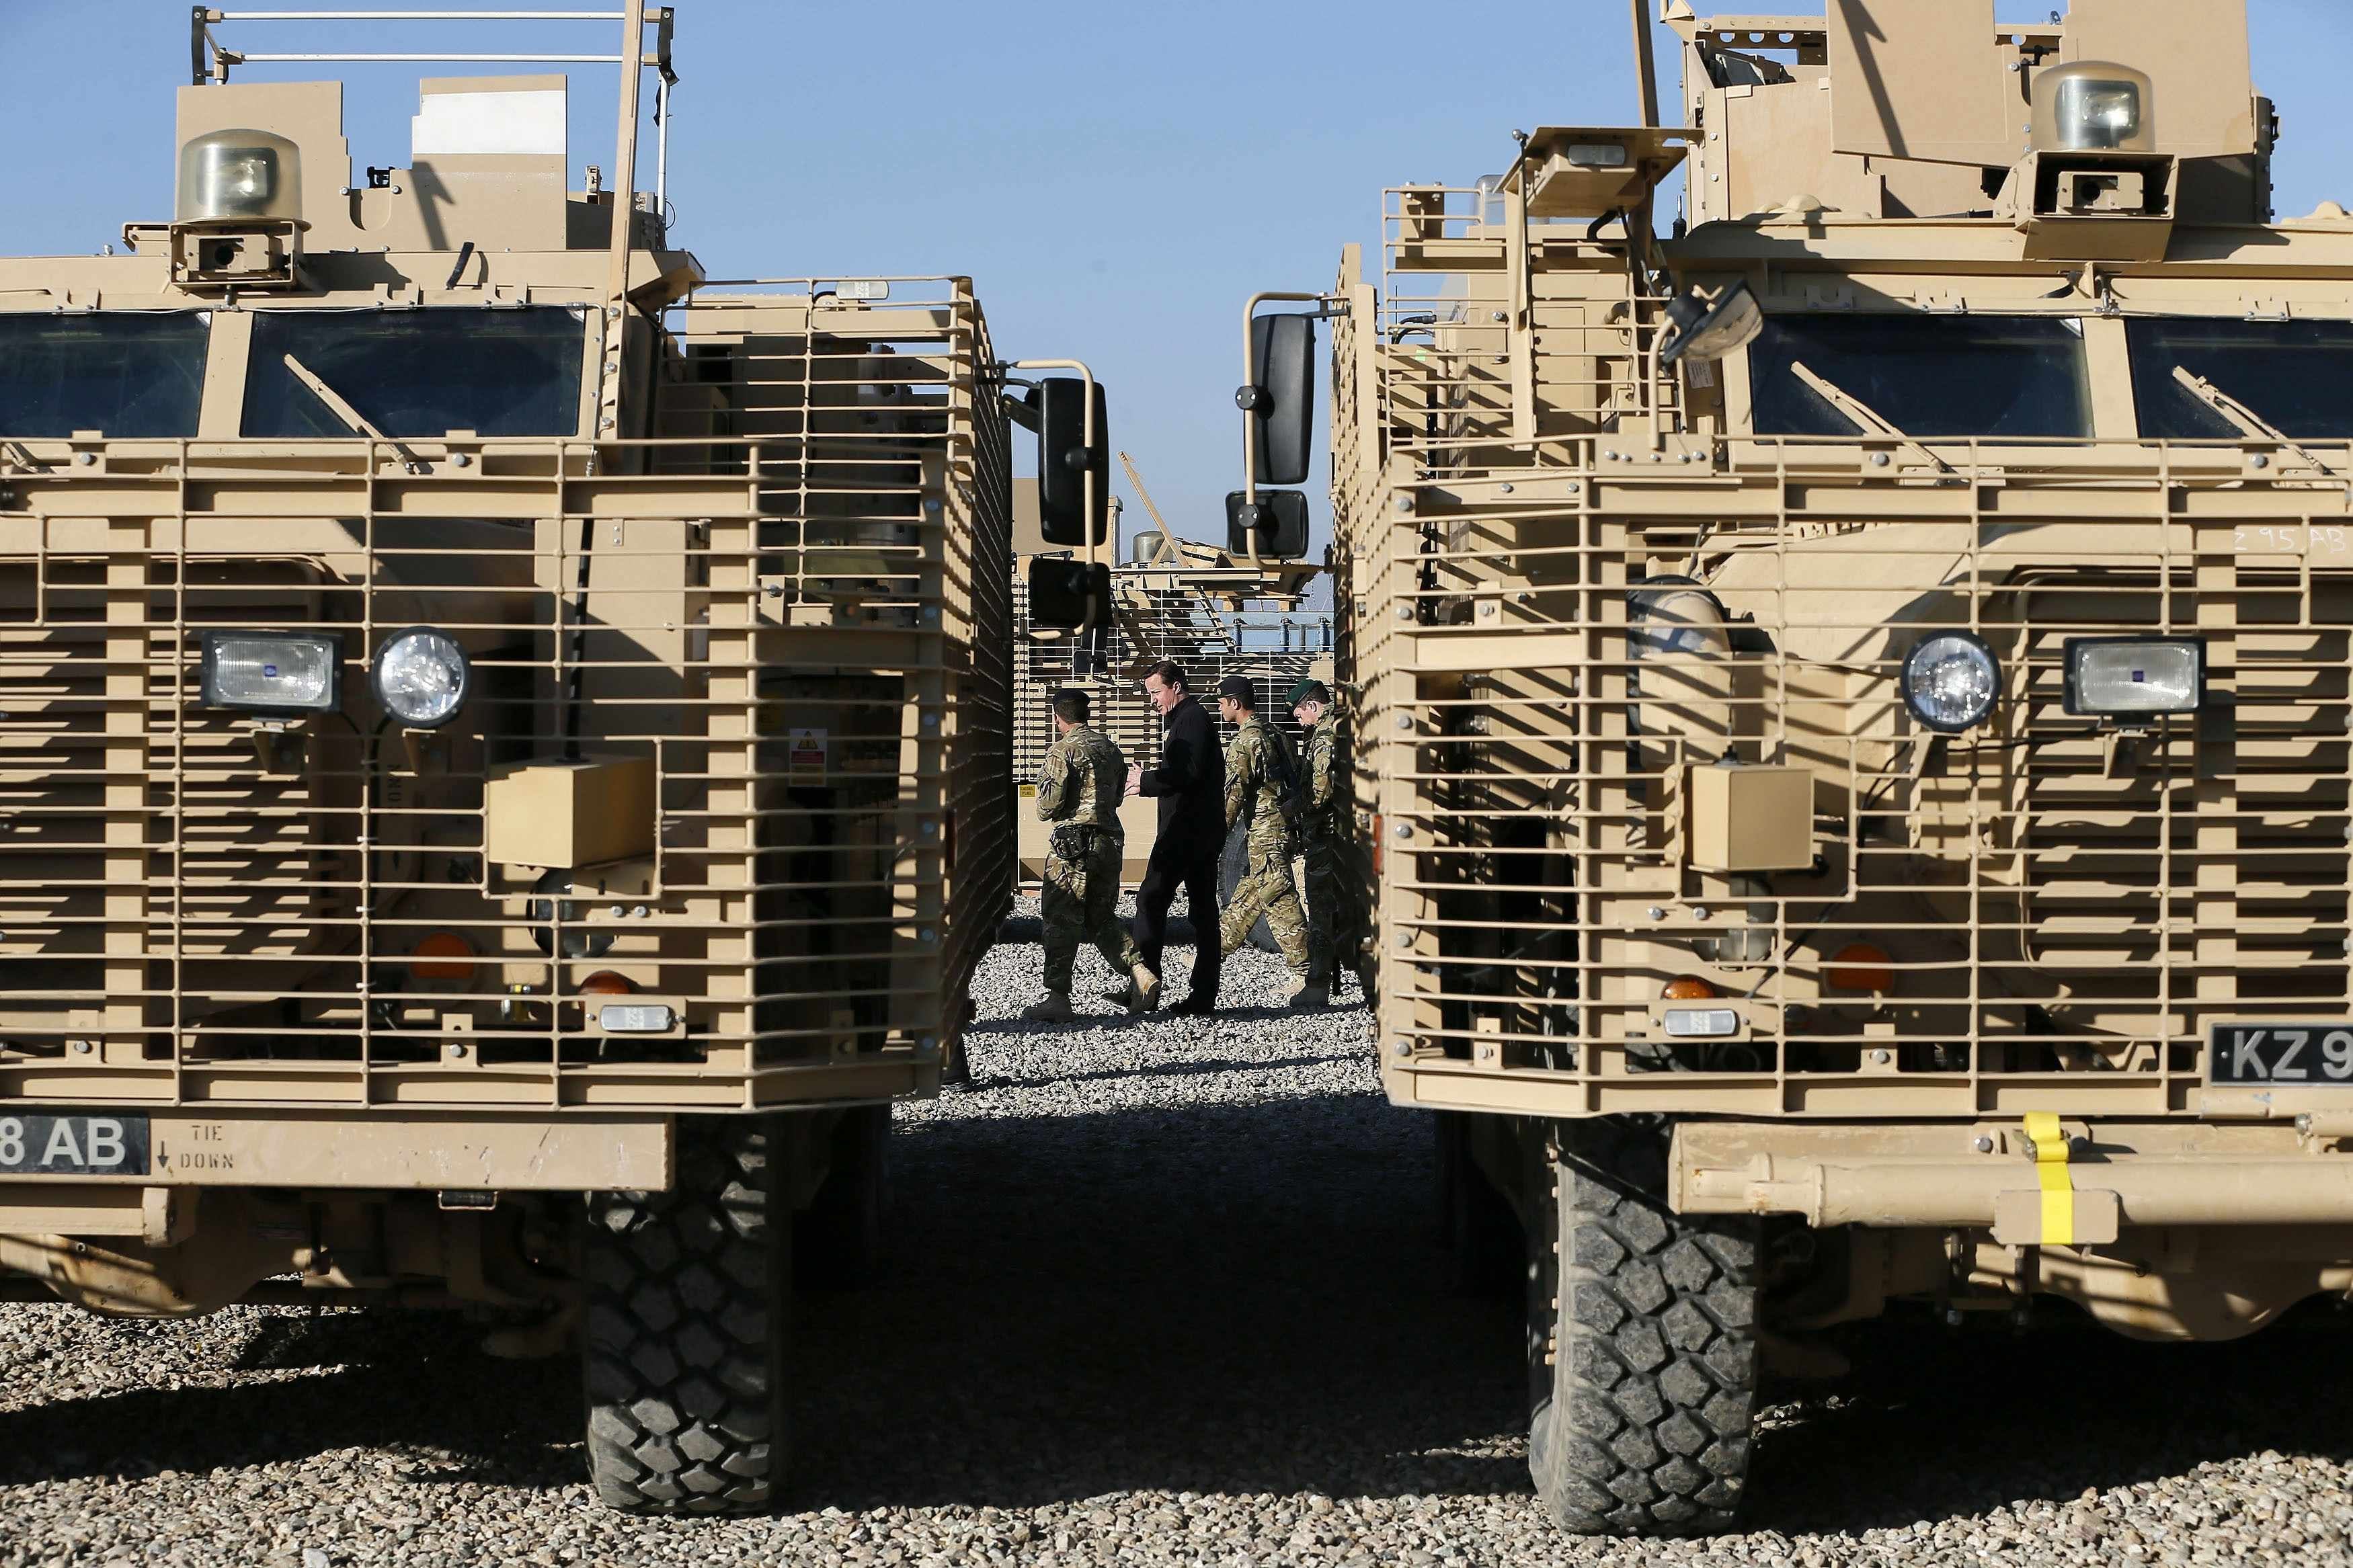 Modderig Zorgvuldig lezen Distributie British Army sheds an Afghan war legacy: blast-proof trucks